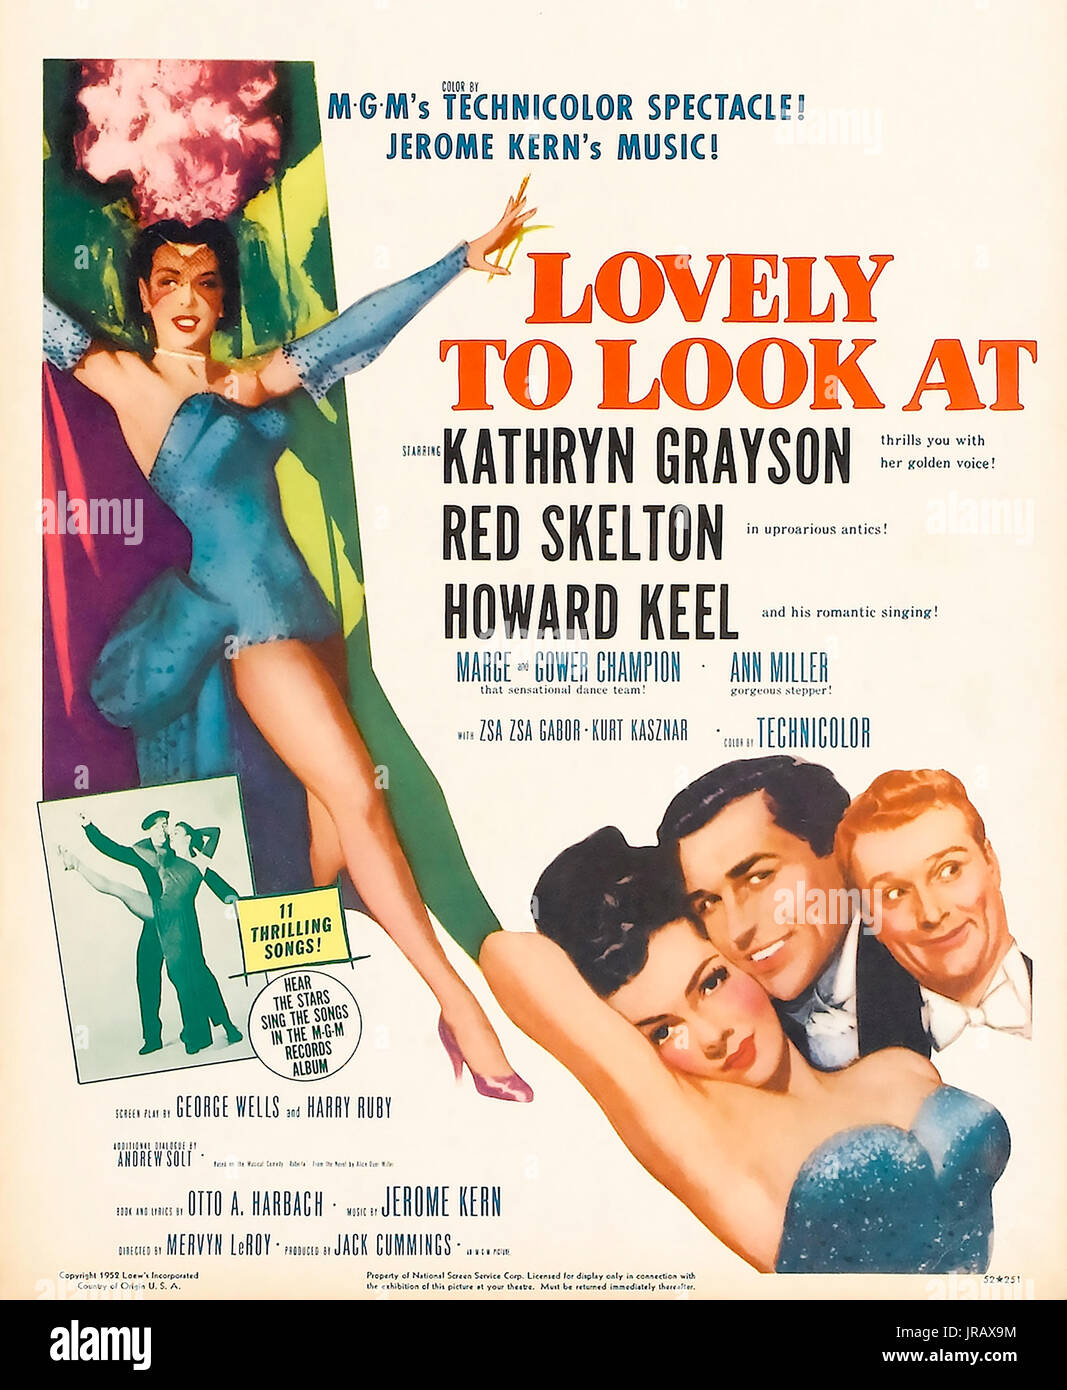 Encantador mirar películas de MGM de 1952 con Kathryn Grayson y Howard Keel Foto de stock